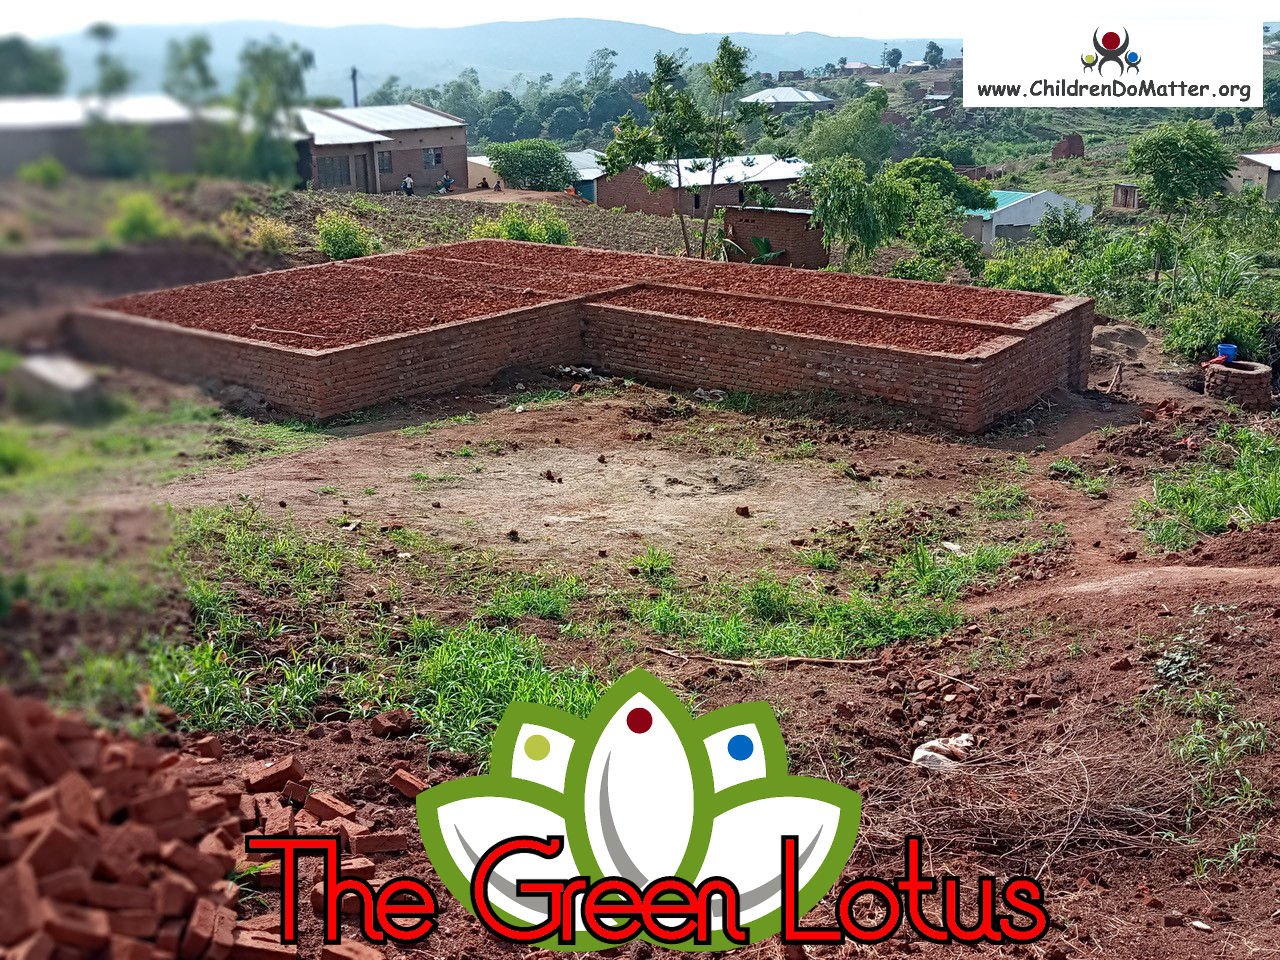 costruzione dell'orfanotrofio casa di accoglienza the green lotus a blantyre malawi - children do matter - 7